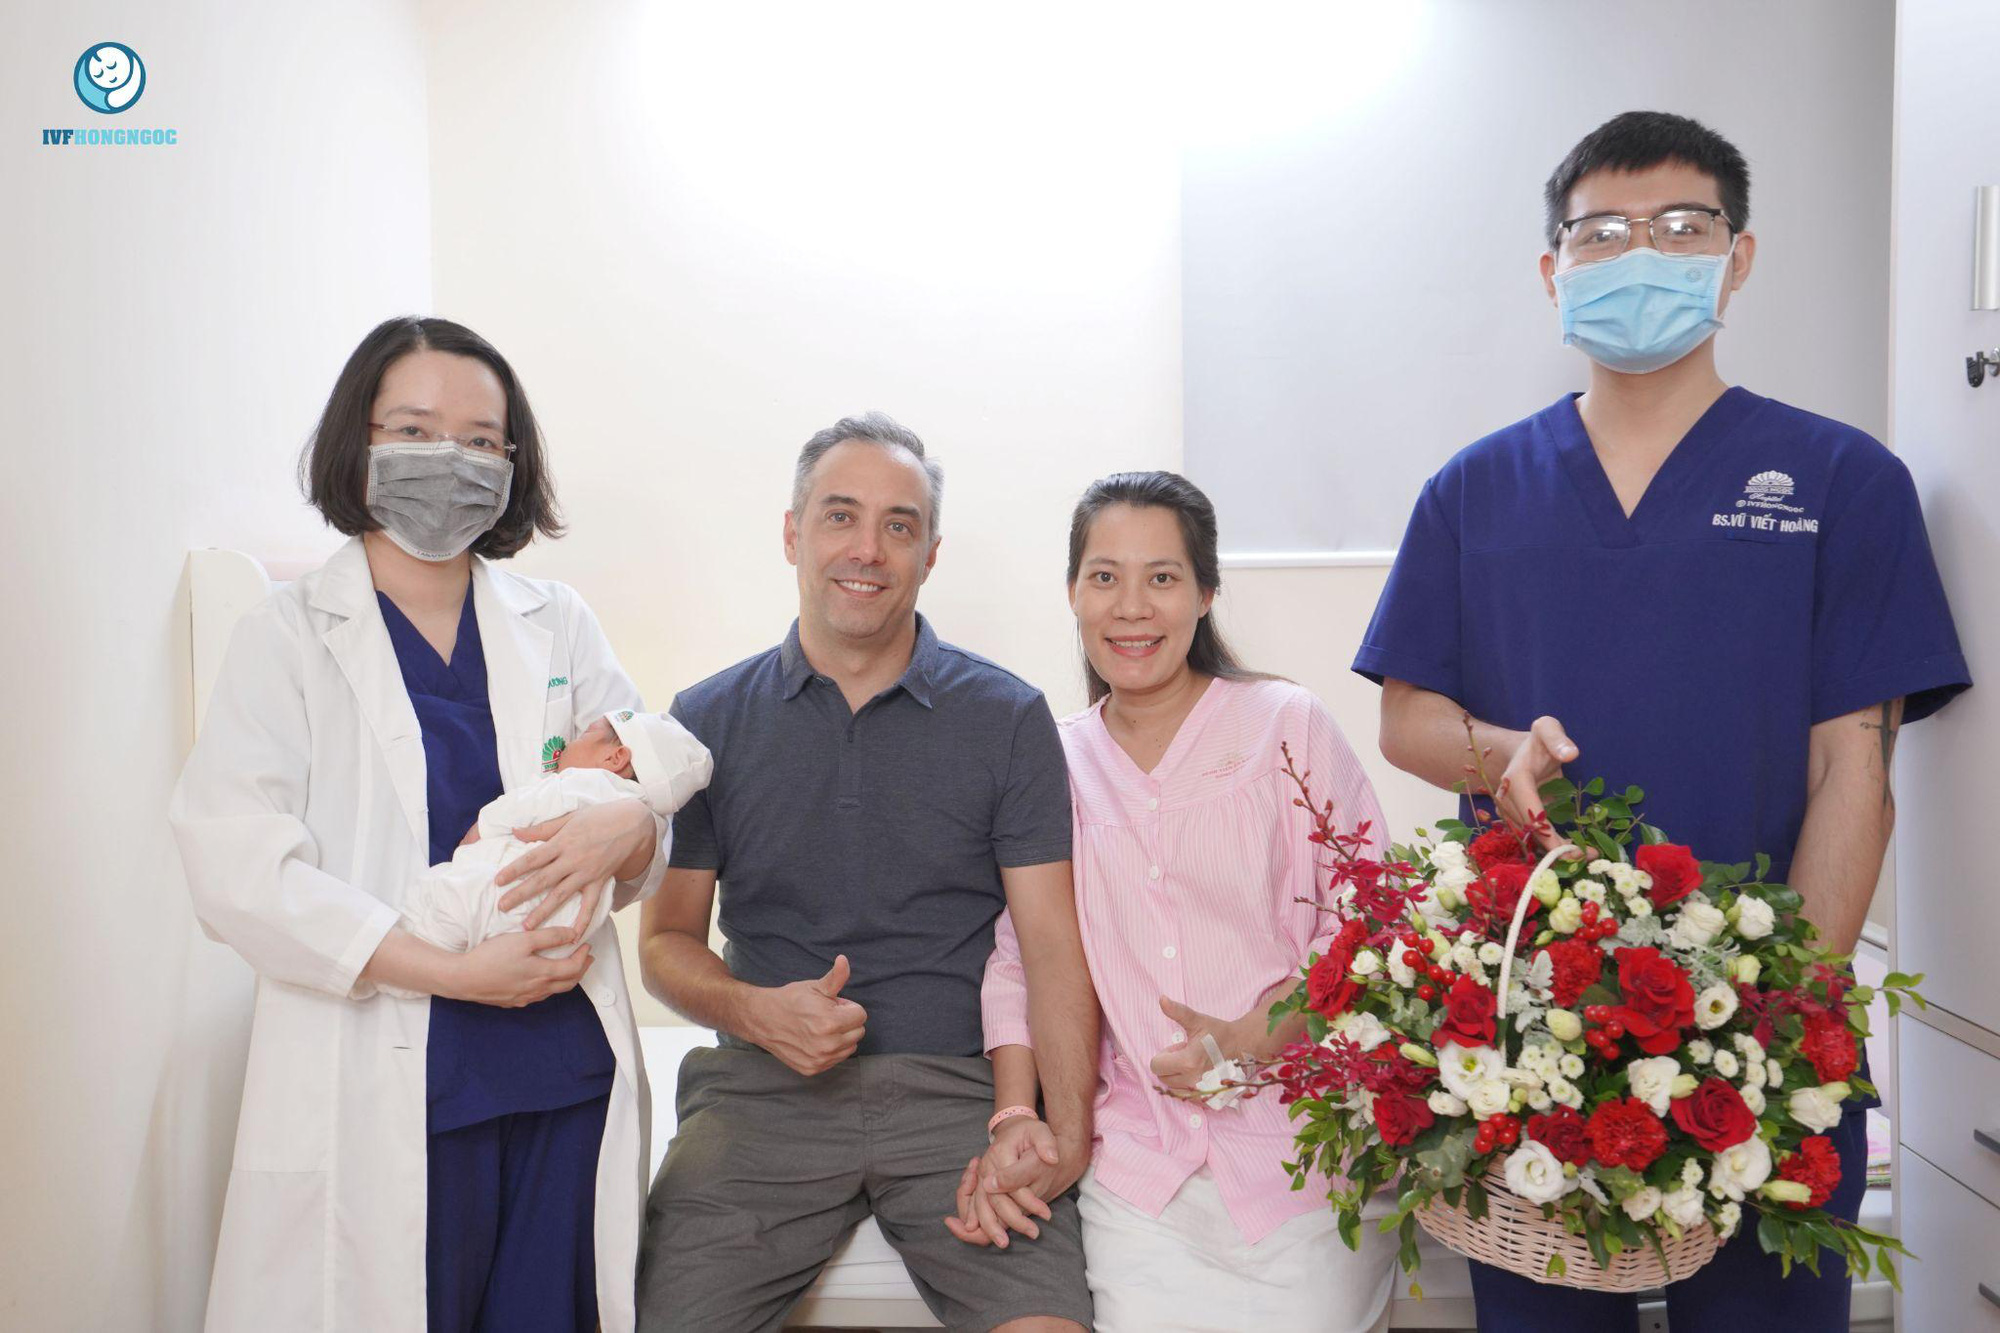 IVF thất bại nhiều lần, cặp vợ chồng Việt-Pháp đón “quả ngọt” nhờ một phát hiện của bác sĩ, 3 năm hiếm muộn được đền đáp xứng đáng - Ảnh 4.